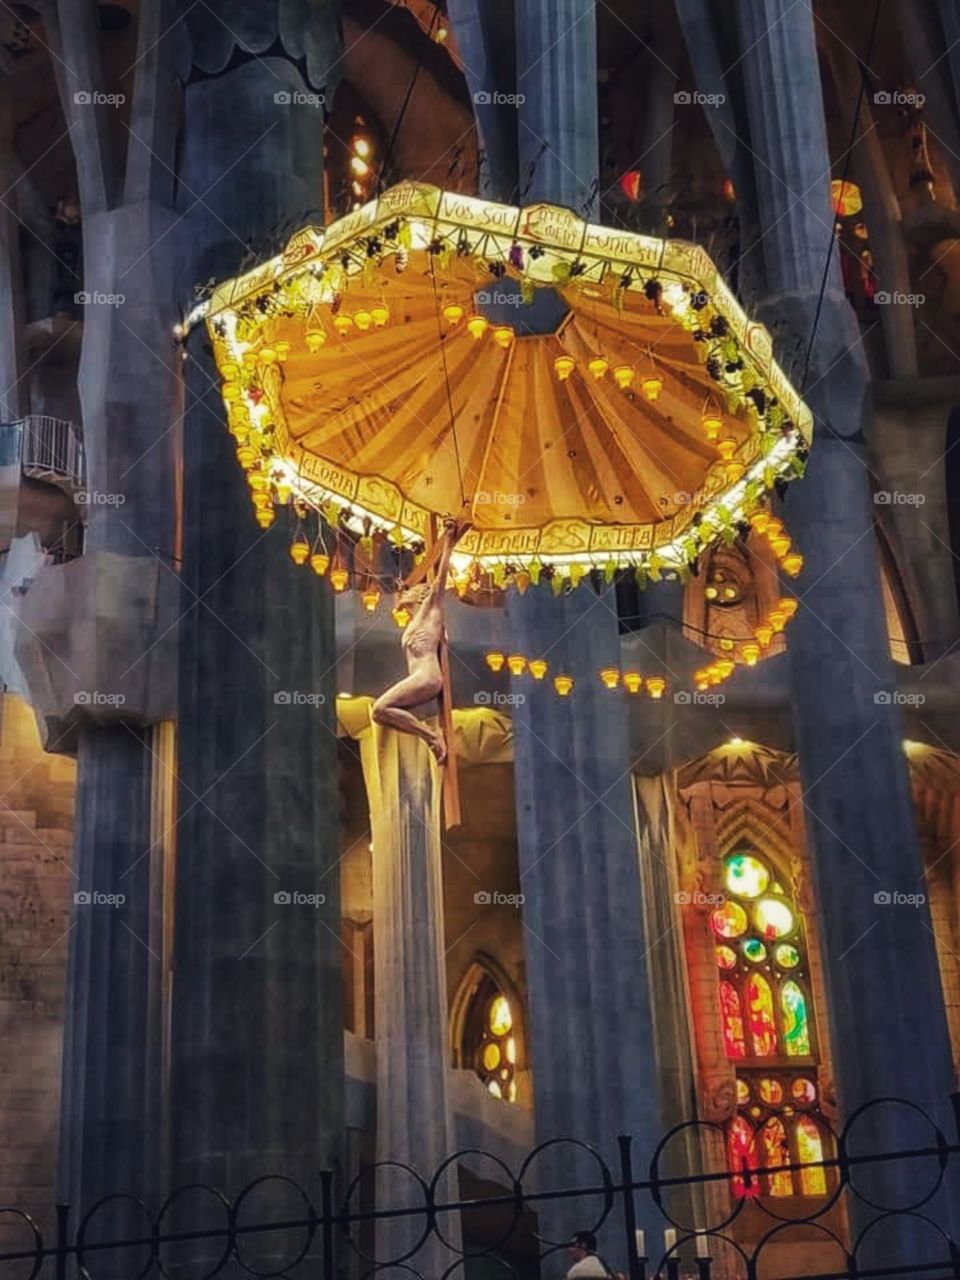 The Basílica i Temple Expiatori de la Sagrada Família is a large unfinished Roman Catholic church in Barcelona, designed by Catalan architect Antoni Gaudí.